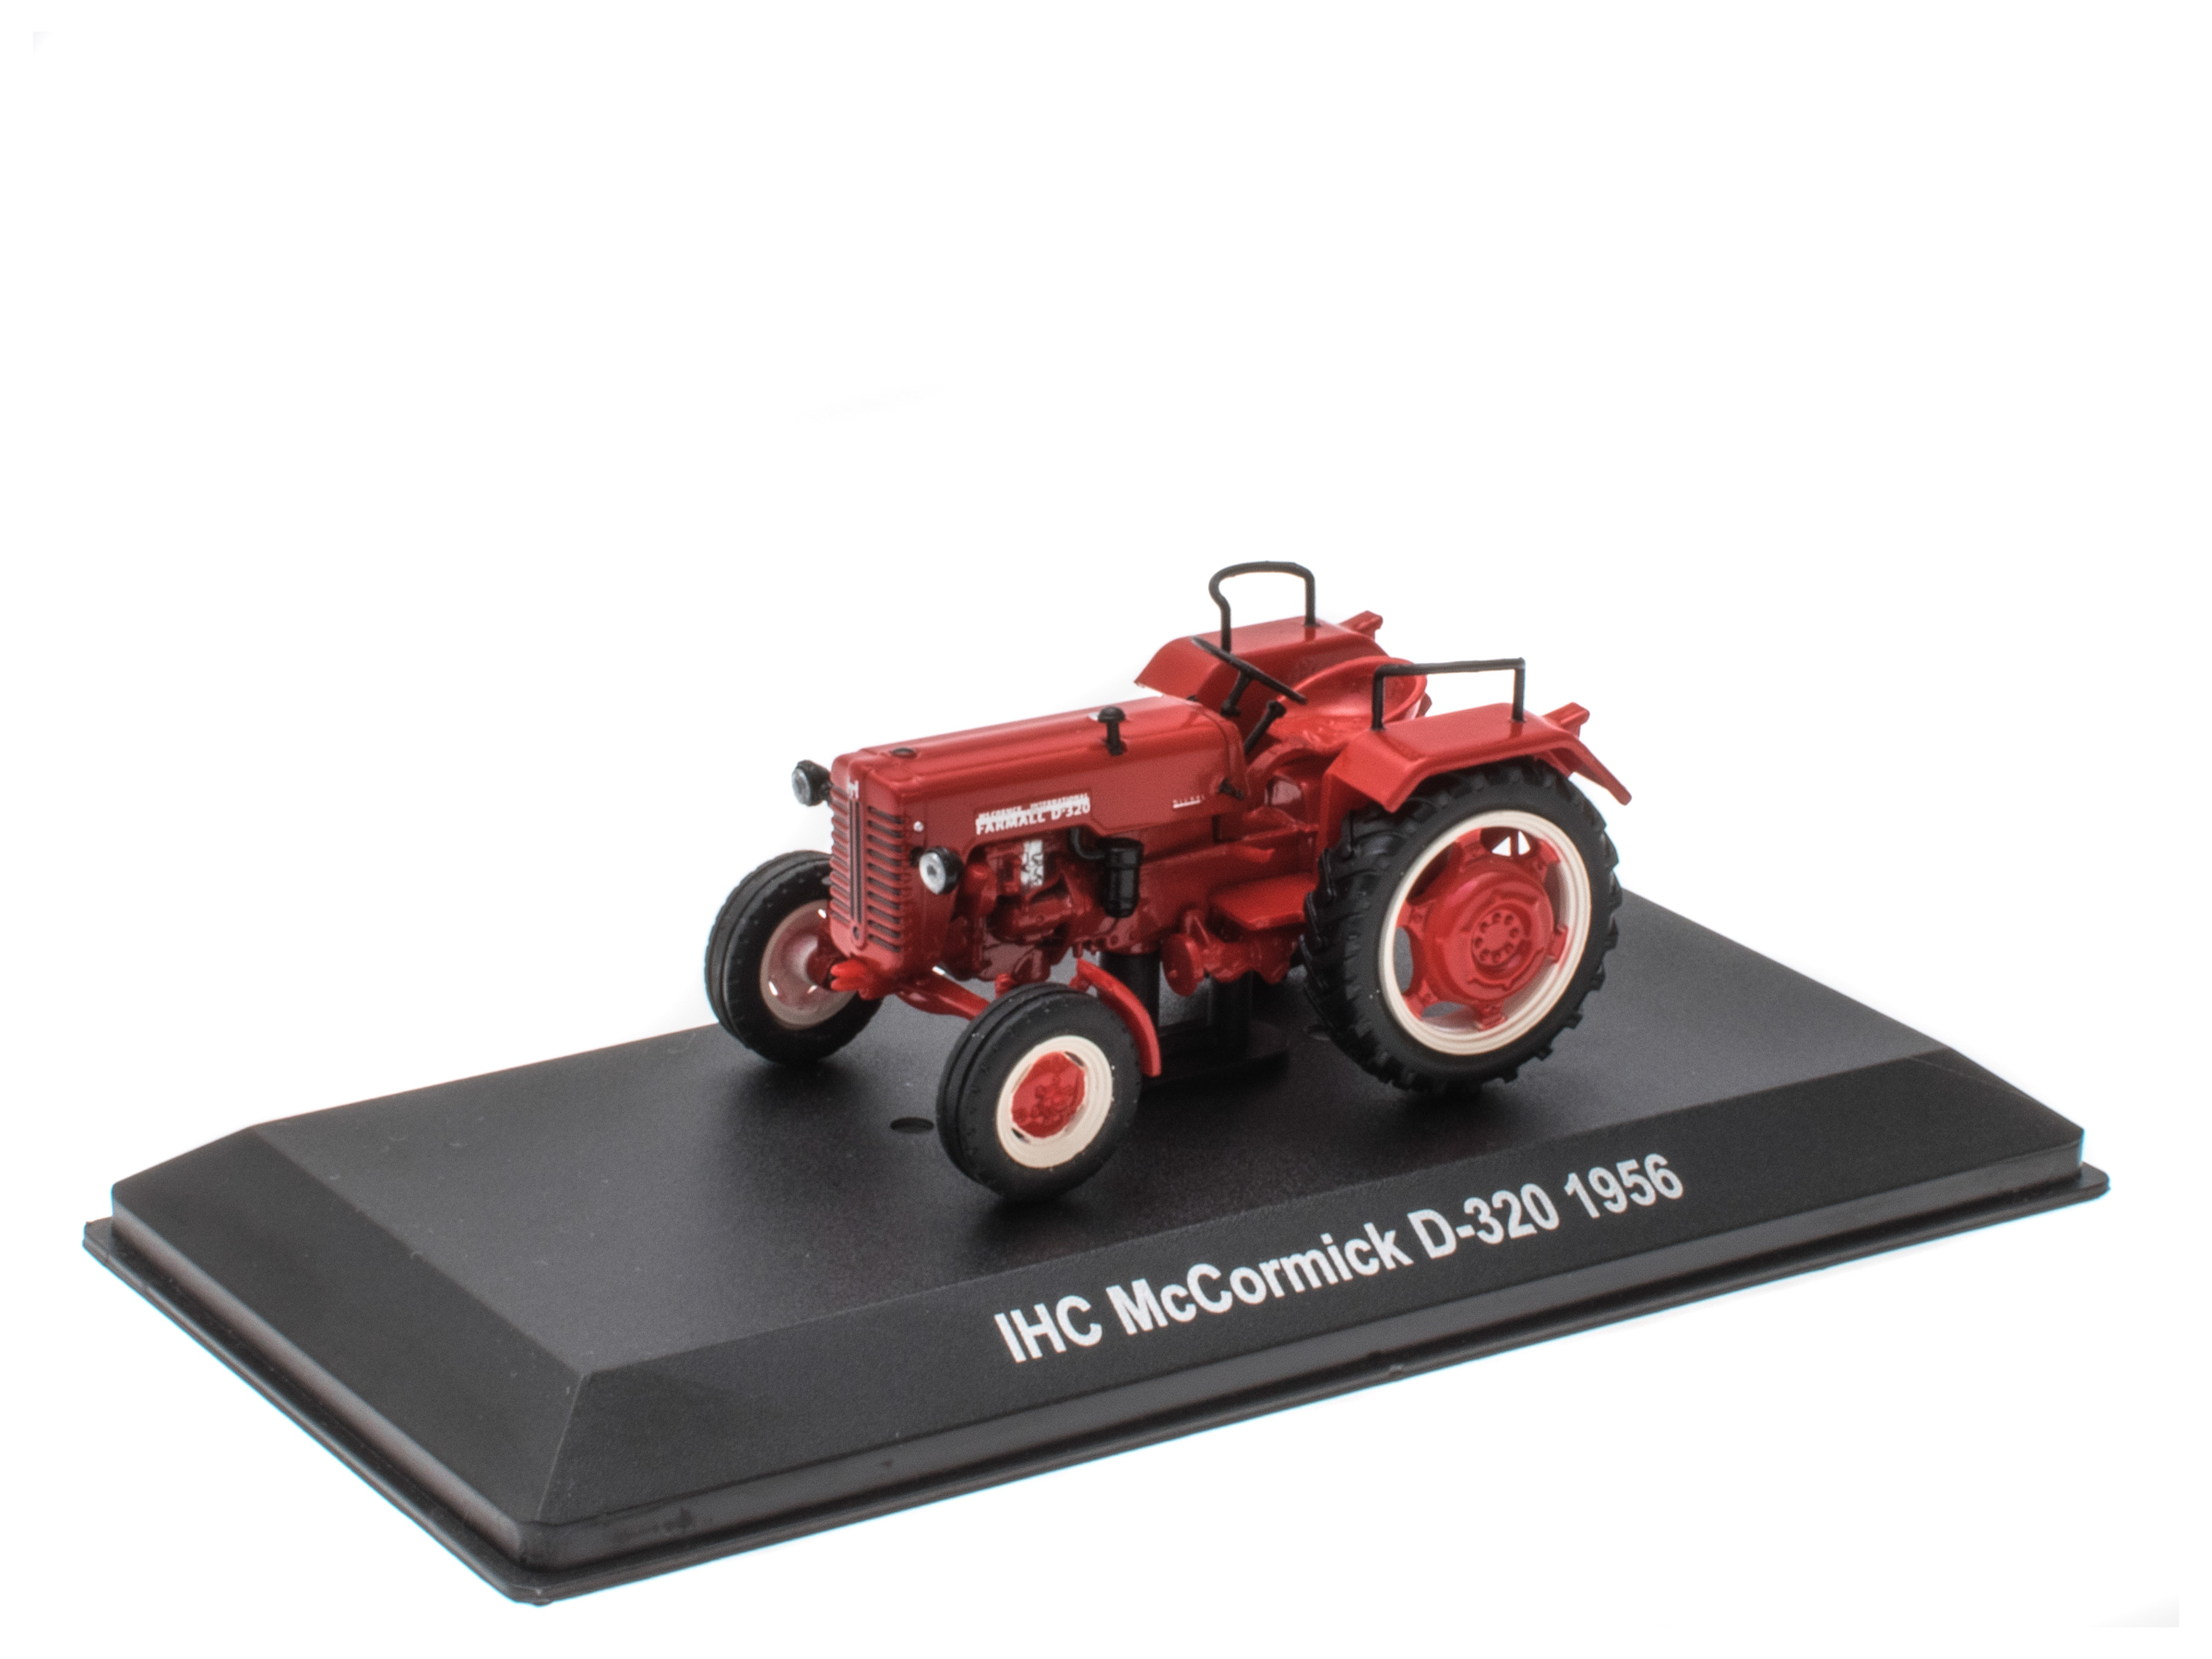 IHC McCormick D-320 Tractor - 1956